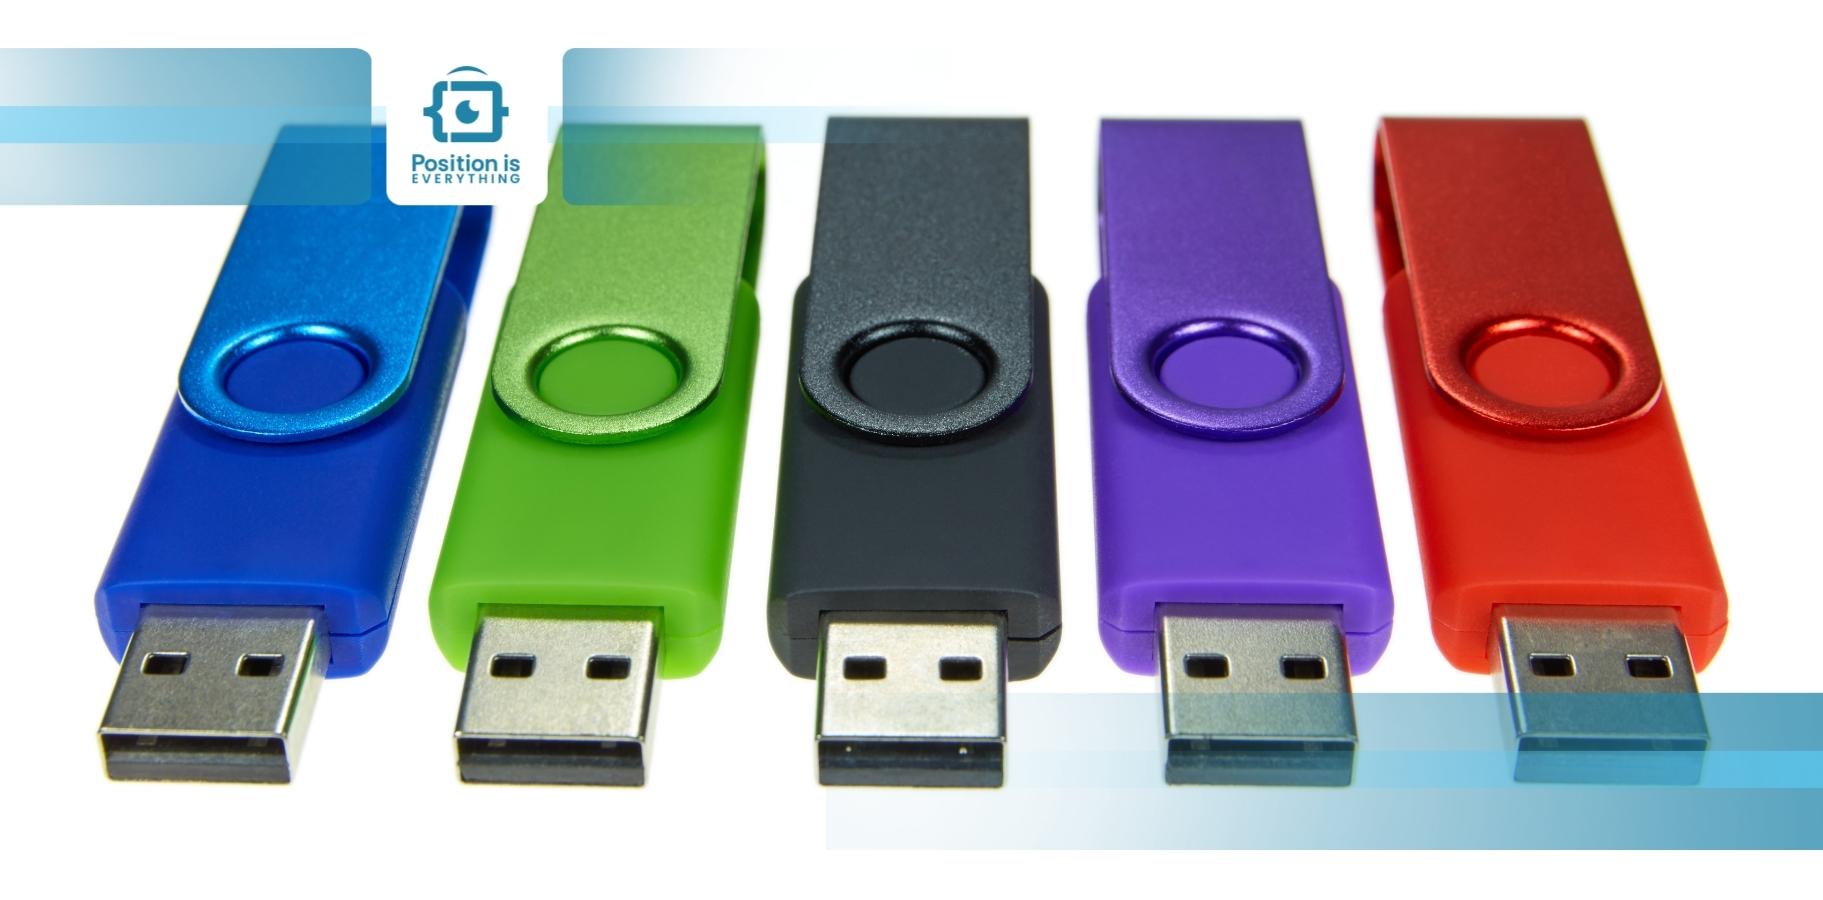 Цветные usb. Цвета USB. USB порт цвета. Юсб 2.0 цвет. Какого цвета USB мощнее.